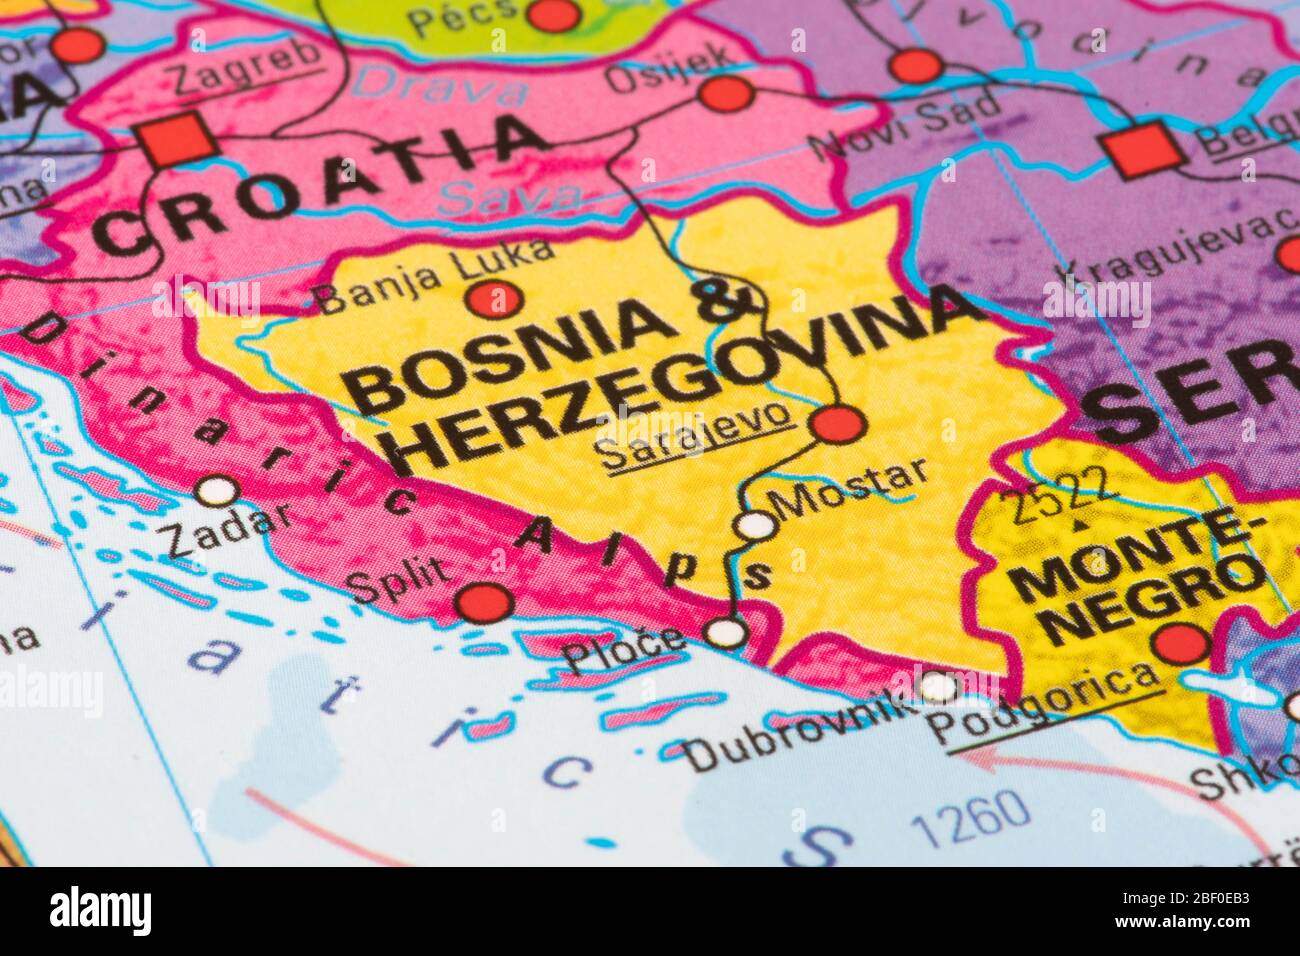 Europe Map Of Bosnia And Herzegovina 2BF0EB3 